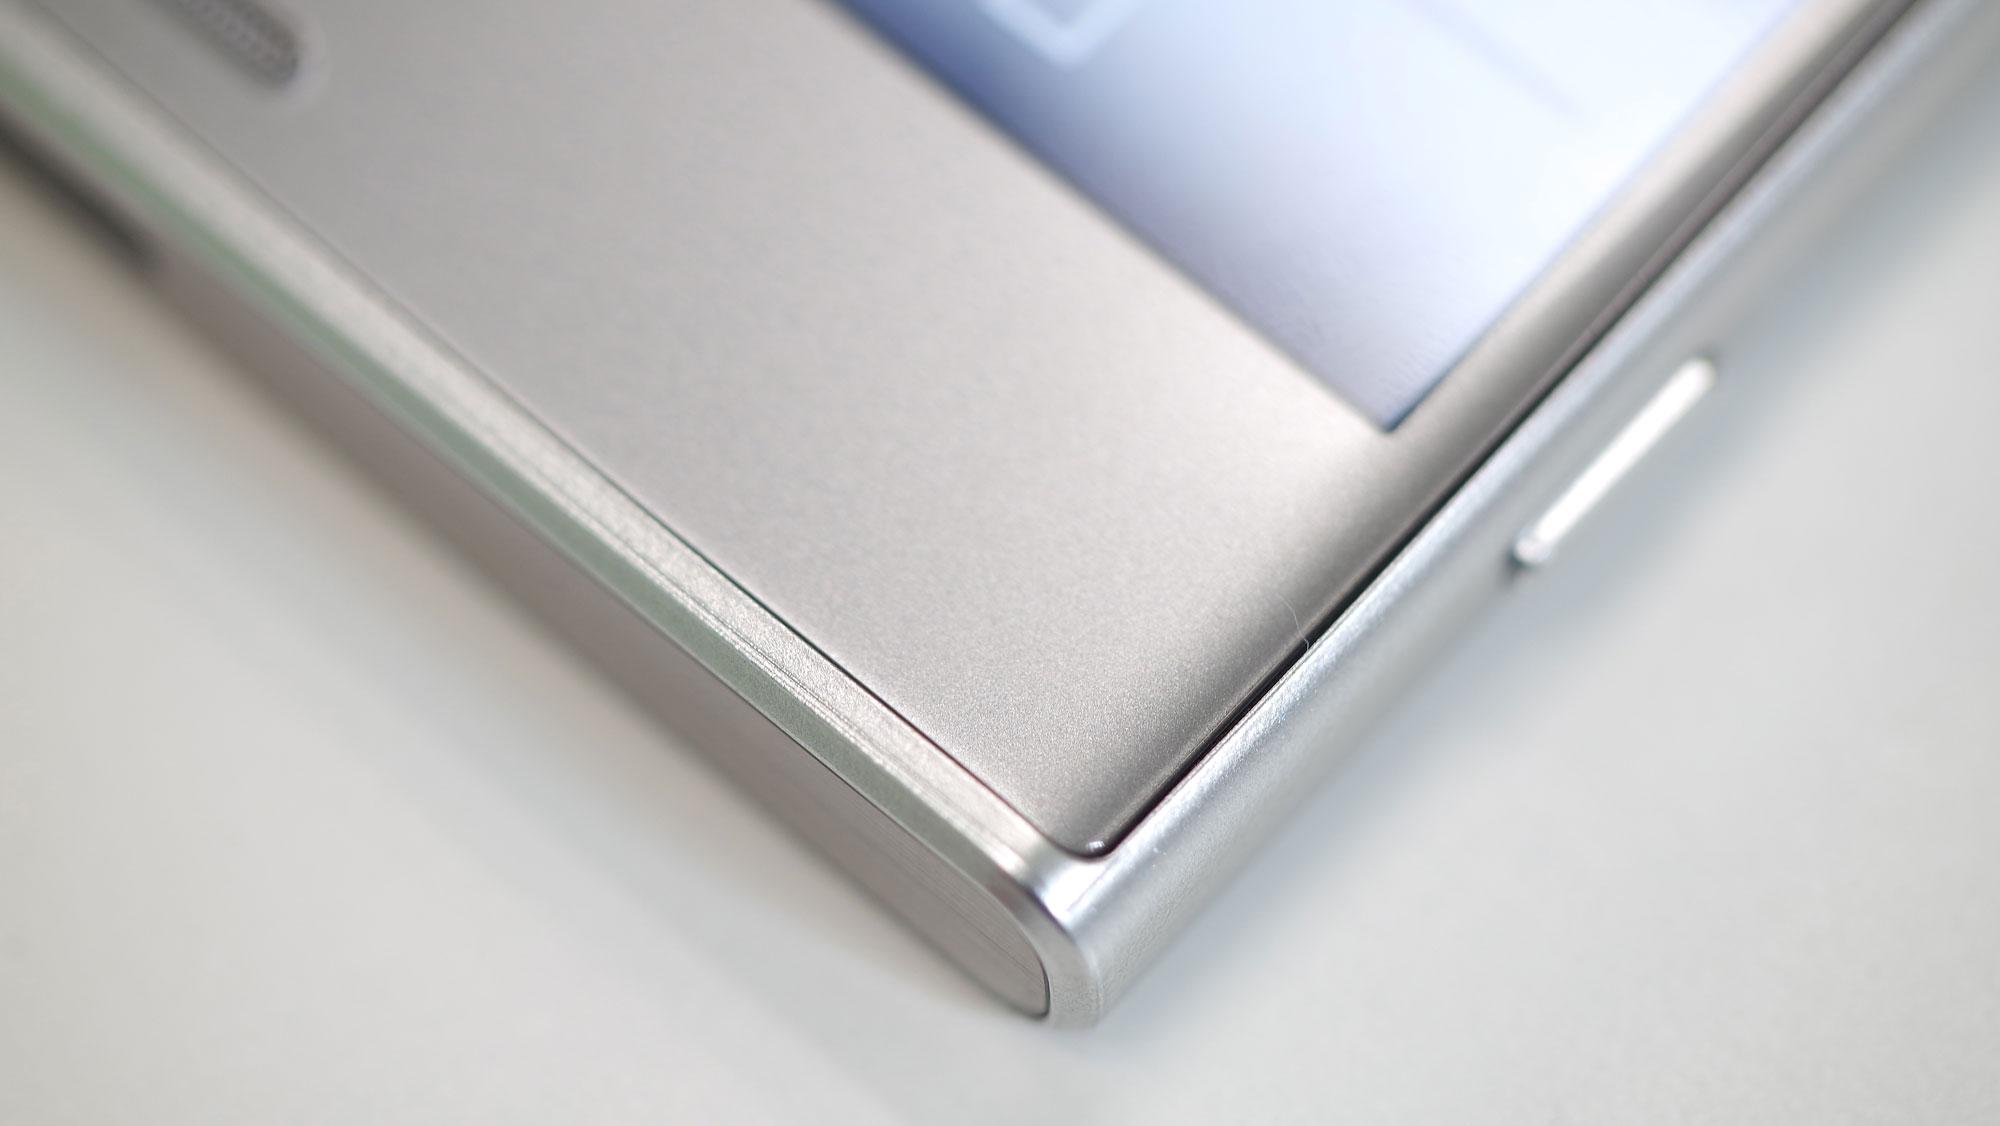 Sony Xperia XZ detalle carcasa de aluminio